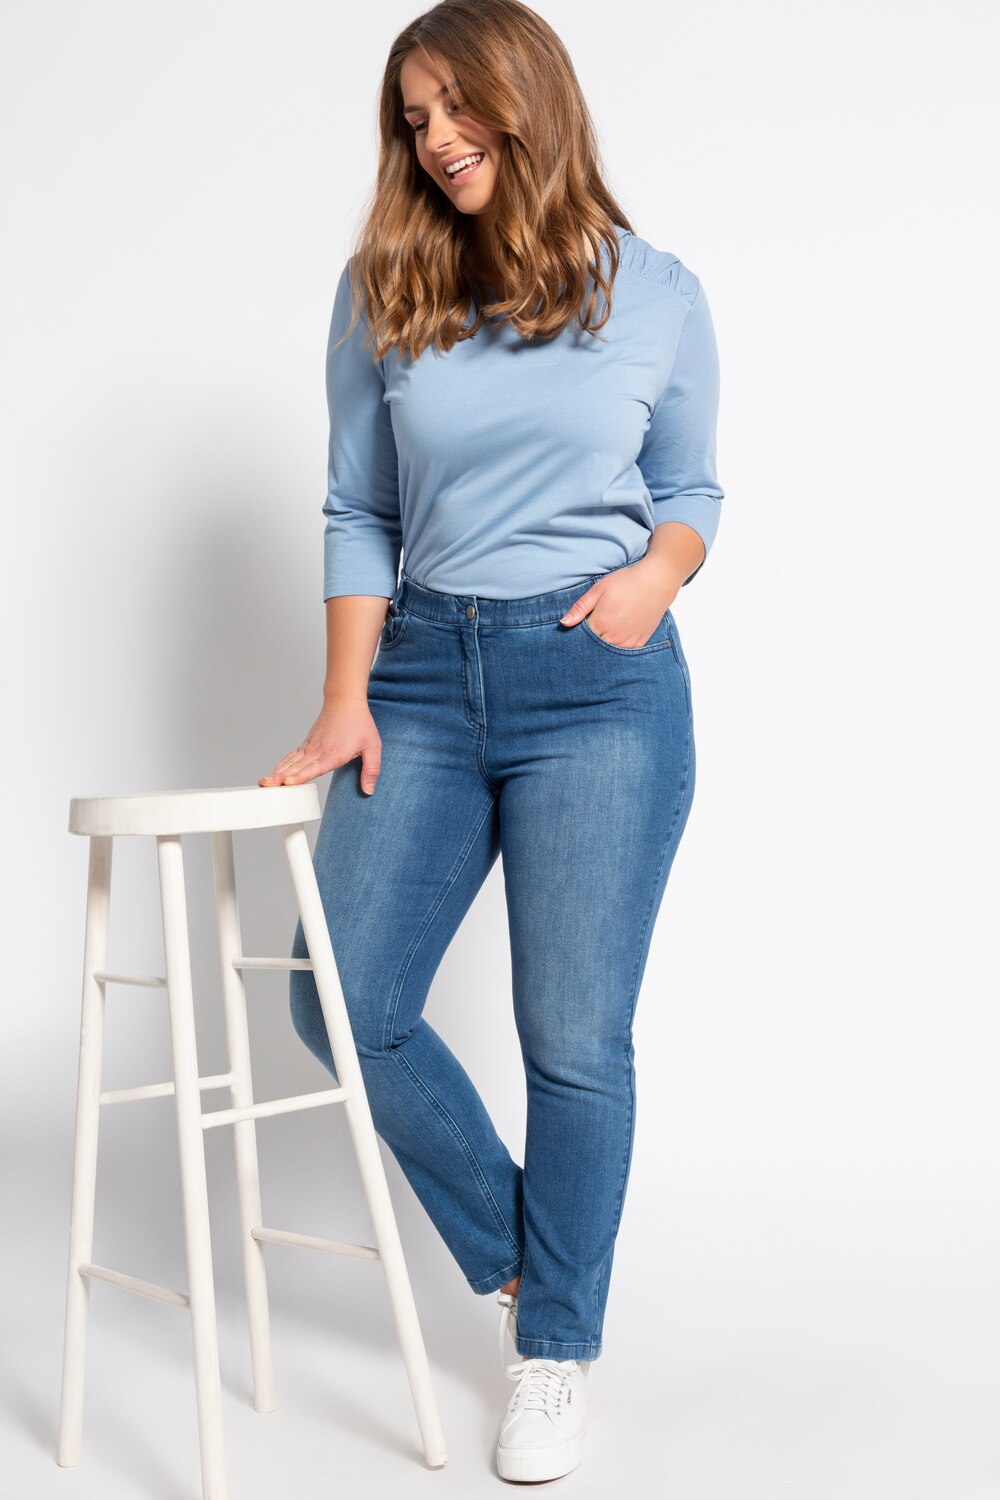 Grote Maten jeans Sammy, Dames, blauw, Maat: 52, Katoen, Ulla Popken